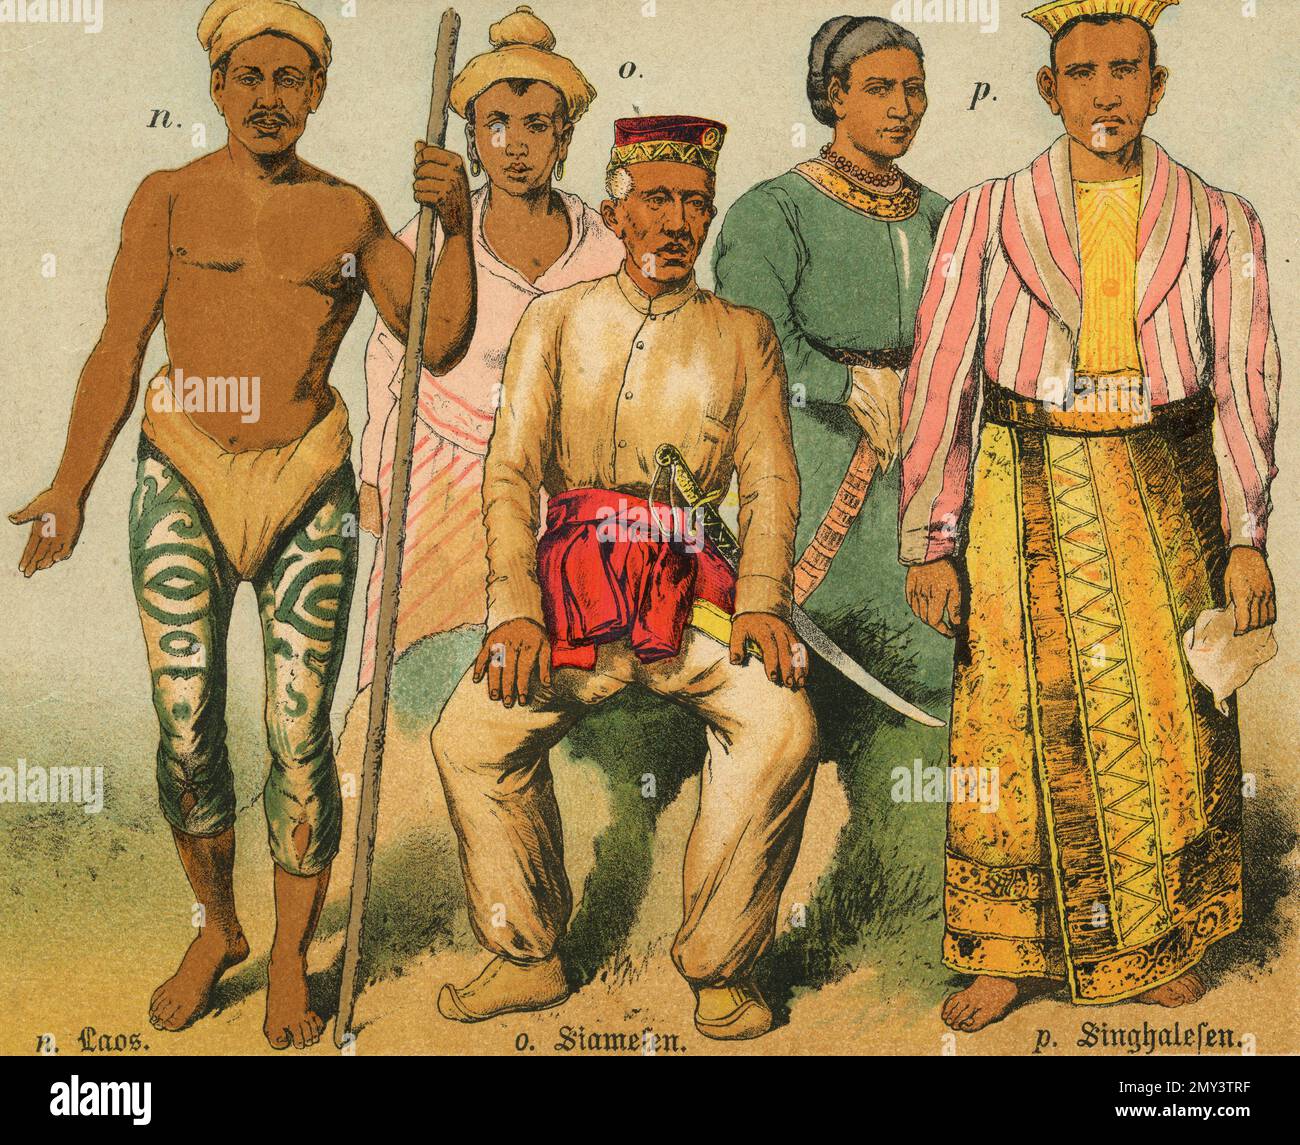 Populations du monde: Laos, Siamois, Singhalois, illustration de couleur, Allemagne 1800s Banque D'Images